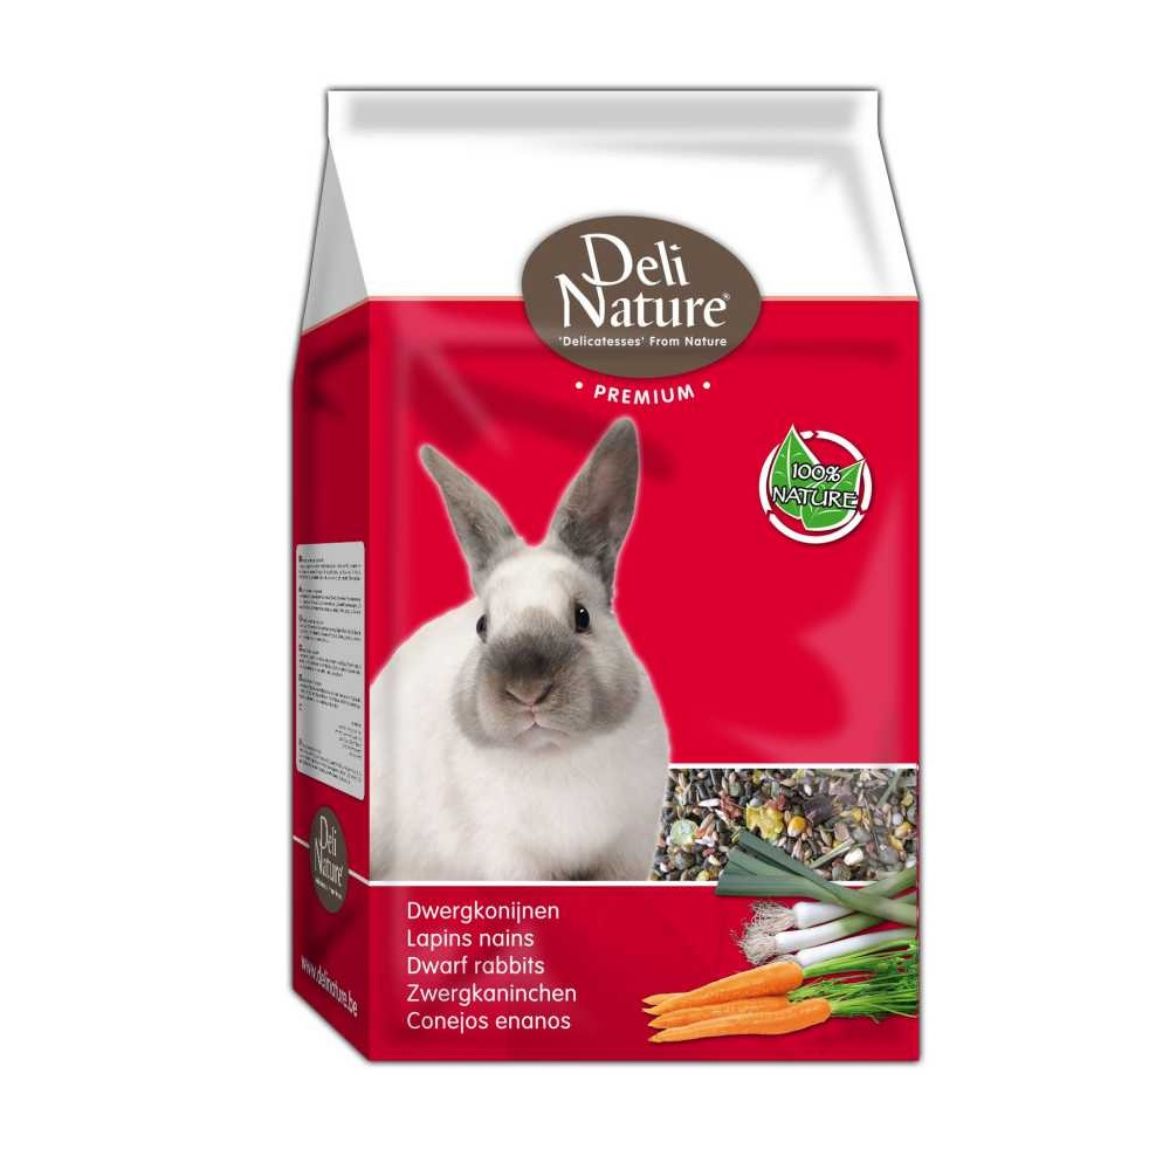 Obrázek z Deli Nature Premium zakrslý králík 3 kg 